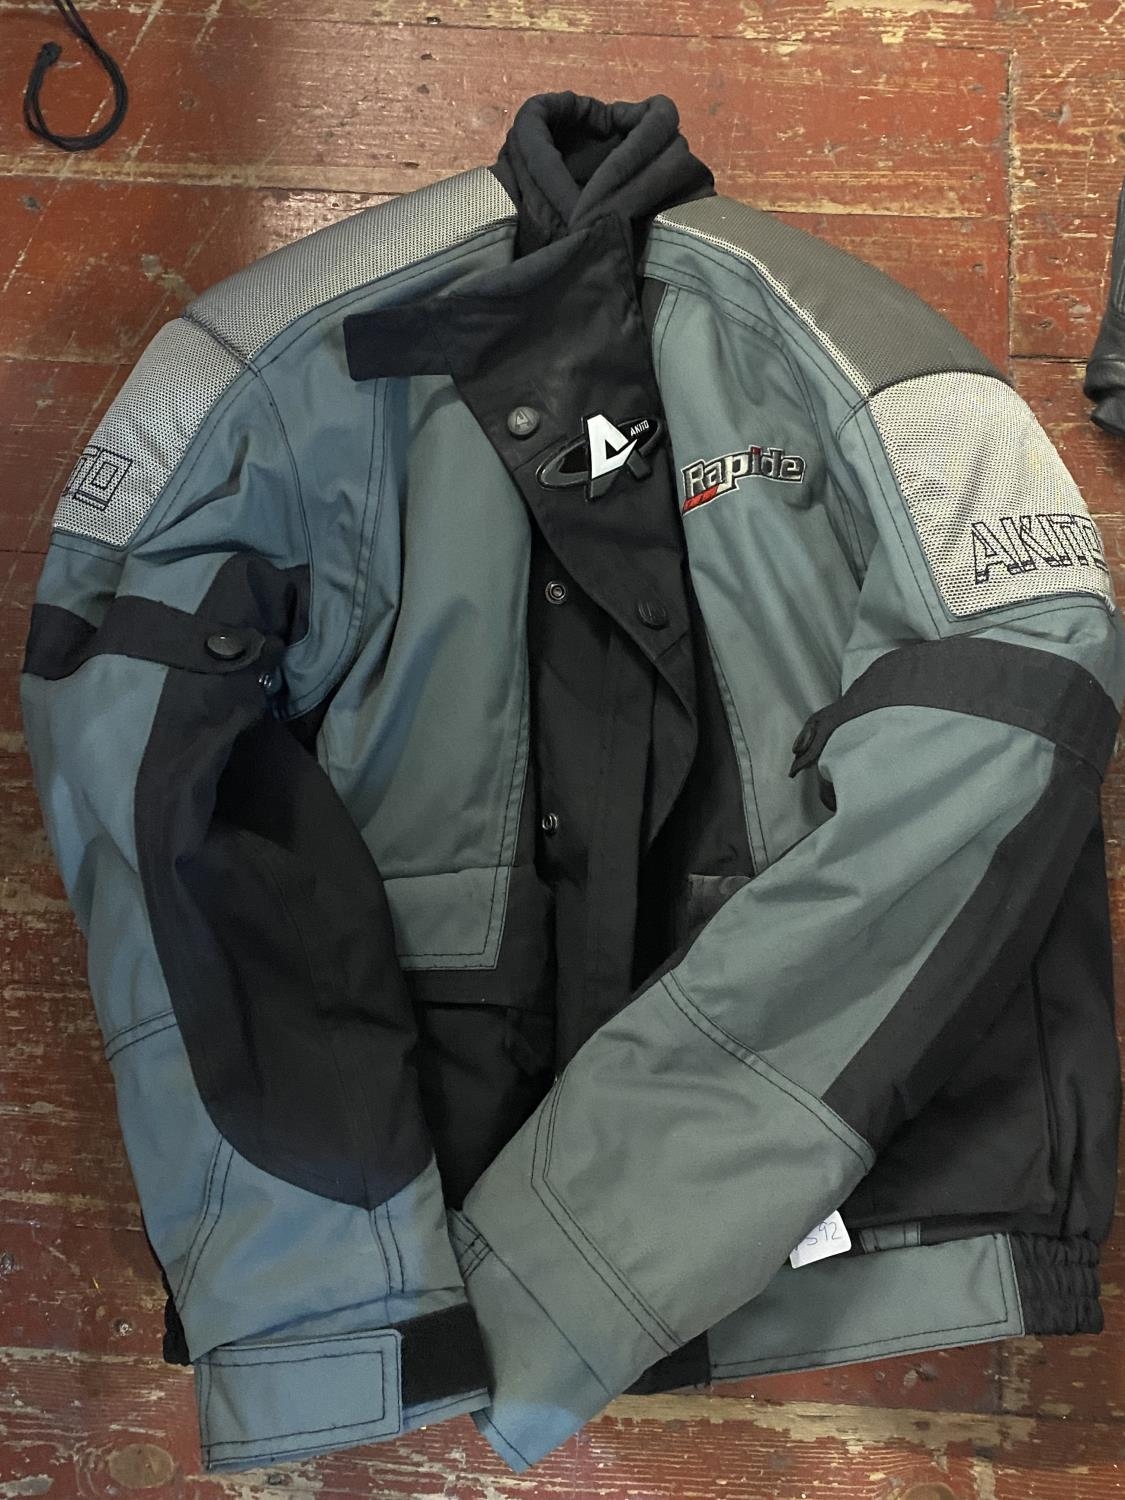 A Akito motorbike jacket size L